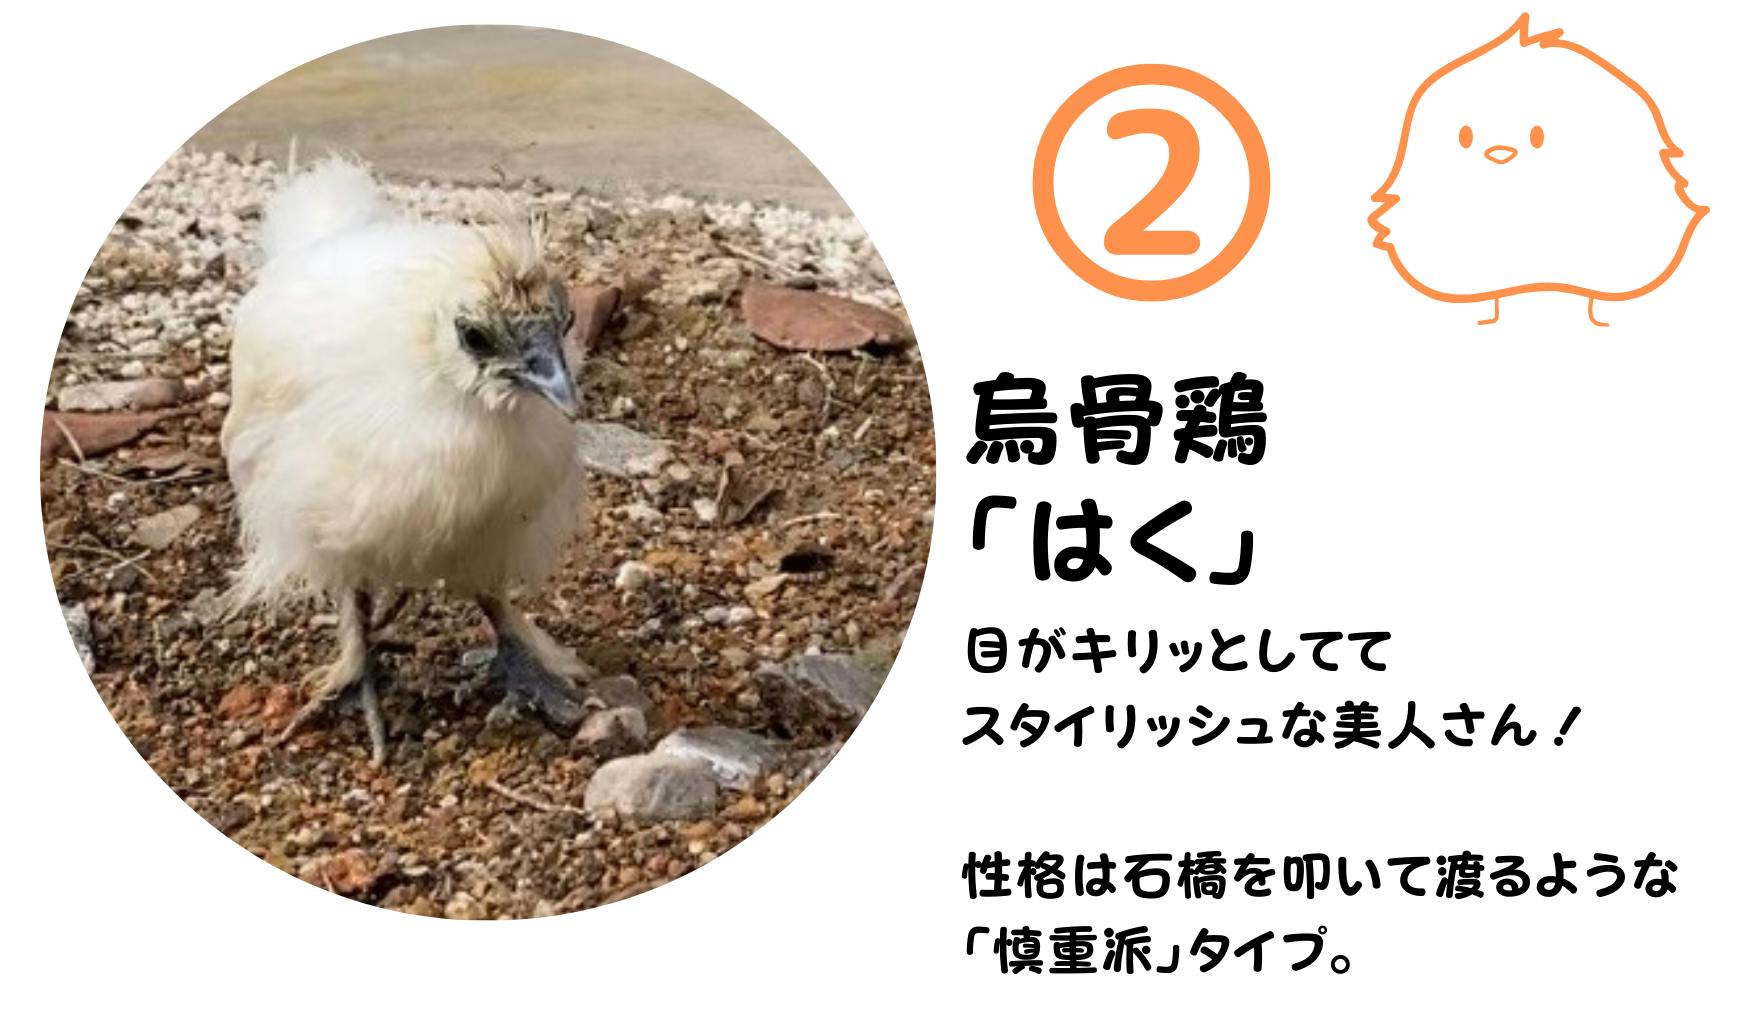 産みたて こだわり東京烏骨鶏のたまご8個 有精卵 - 食品